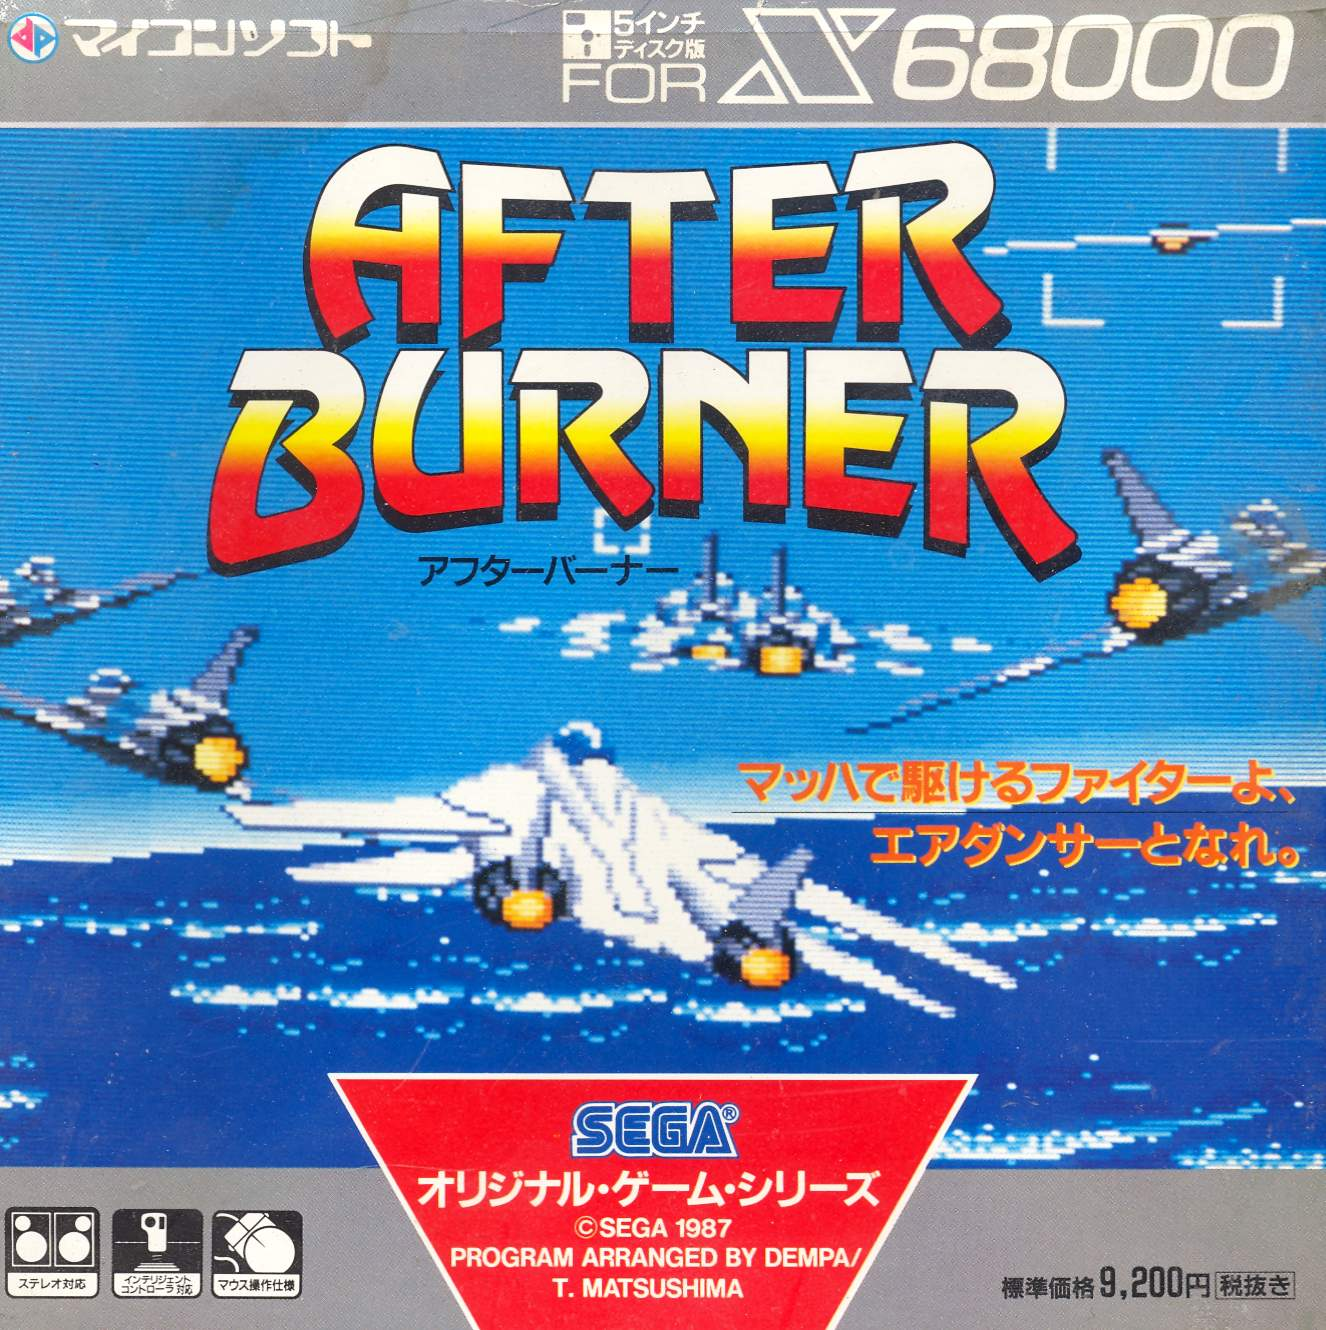 After Burner for X68000